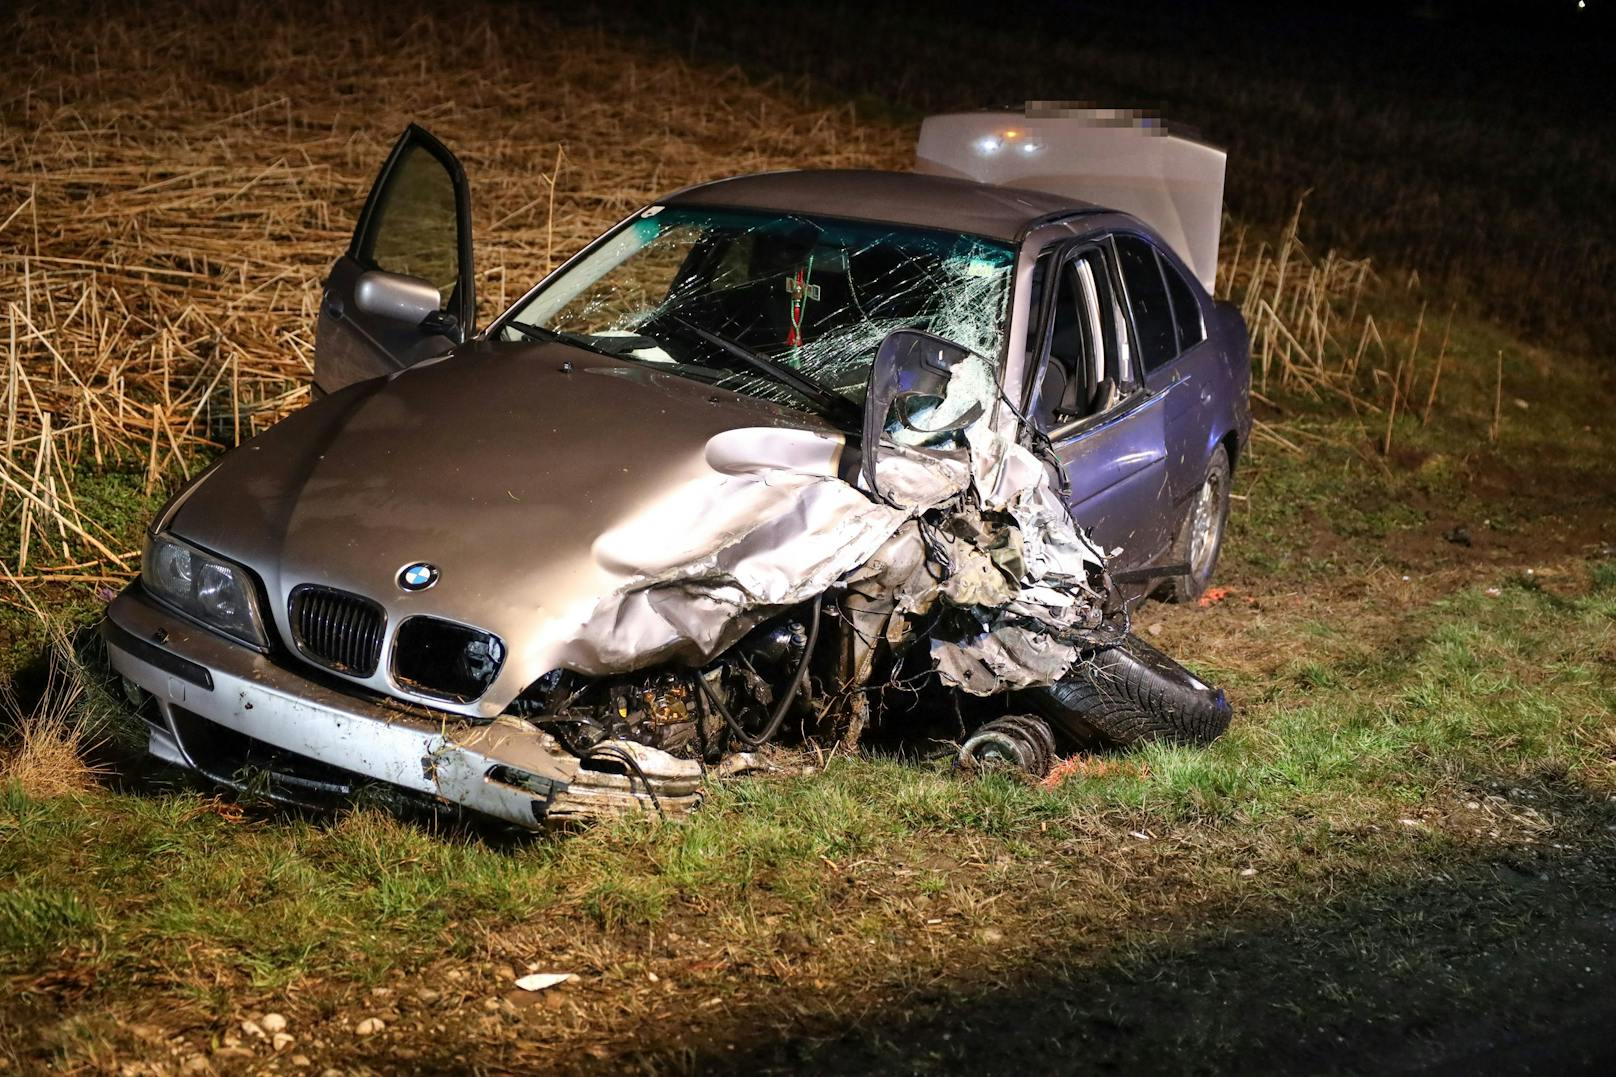 BMW bei Crash mit Pick-Up 100 Meter weg geschleudert